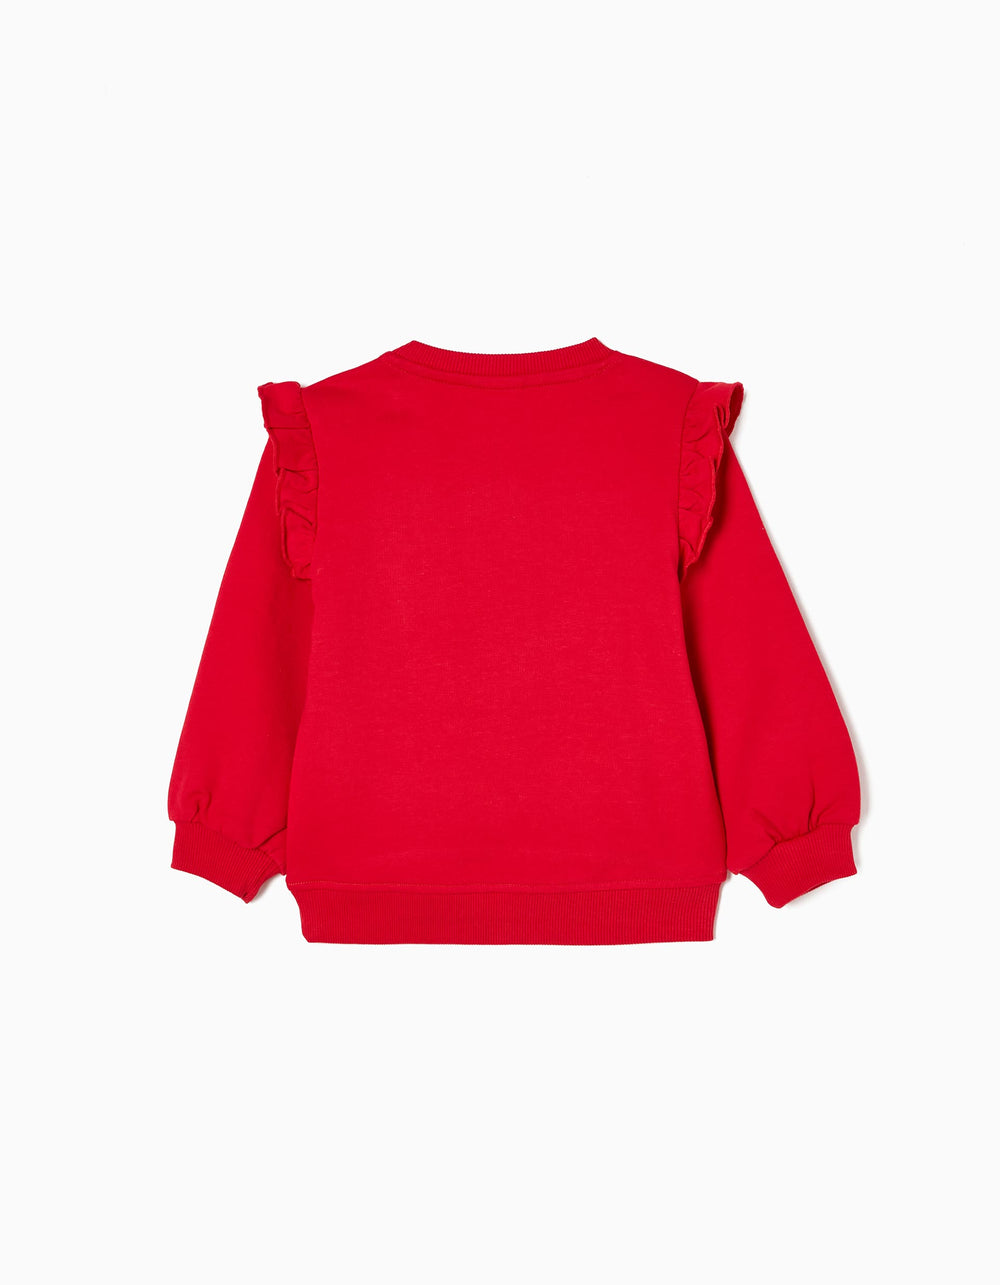 Cotton Sweatshirt for Baby Girls 'Minnie', Red